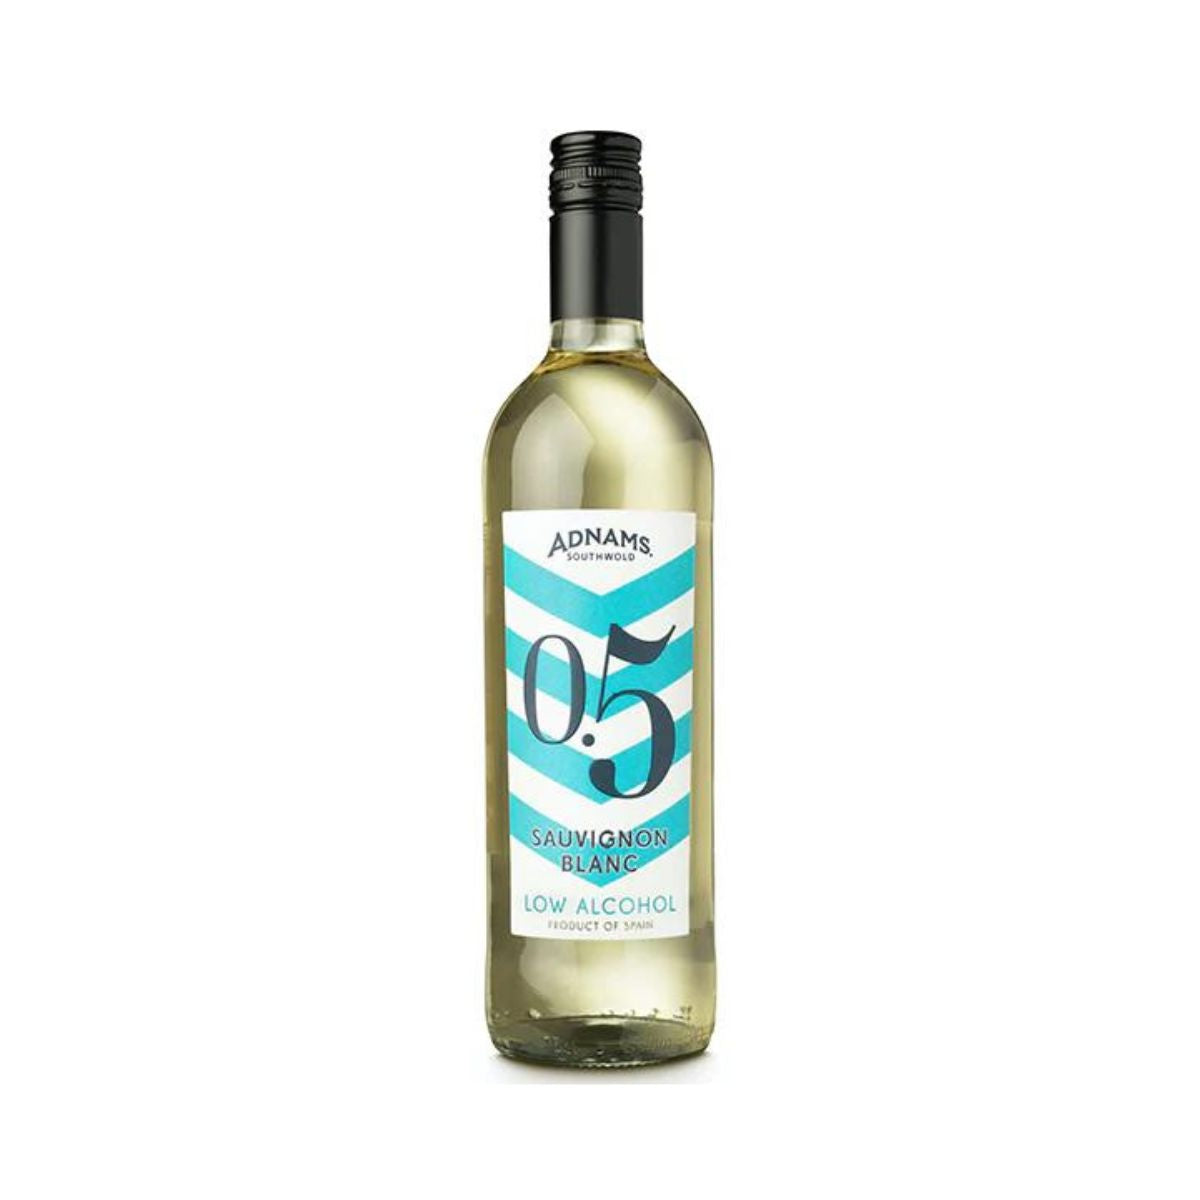 Adnams Sauvignon Blanc - Low Alcohol White Wine